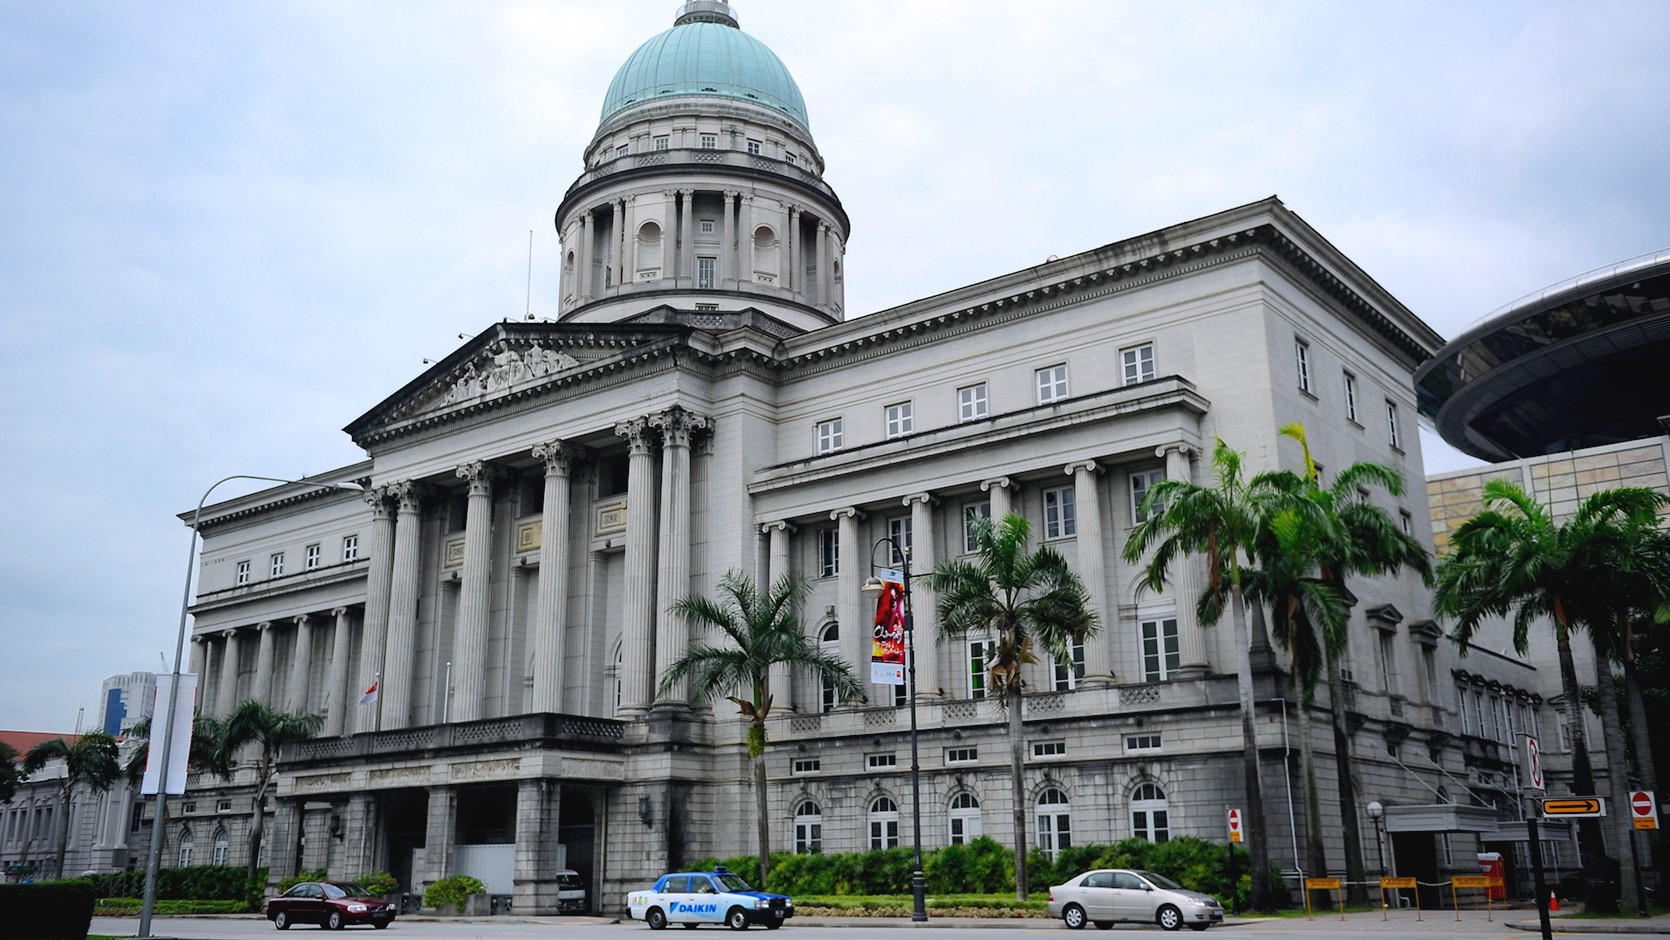 toa-an-toi-cao-singapore-supreme-court-1716372821.jpg